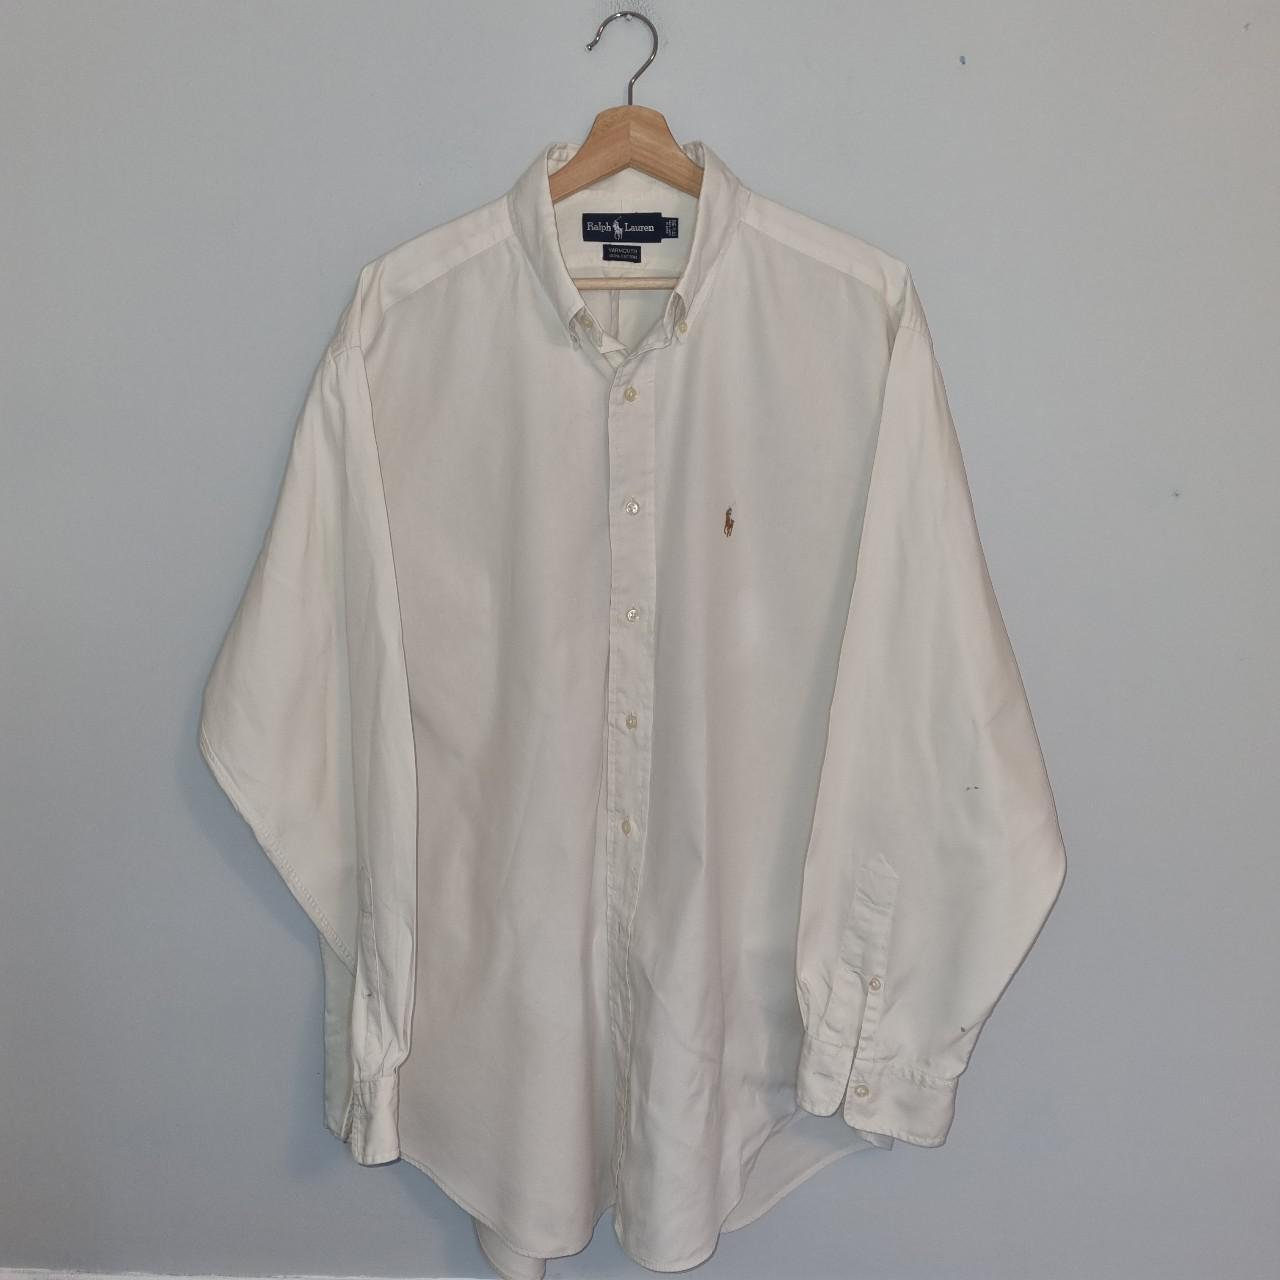 Polo Ralph Lauren cream long sleeved shirt, with... - Depop